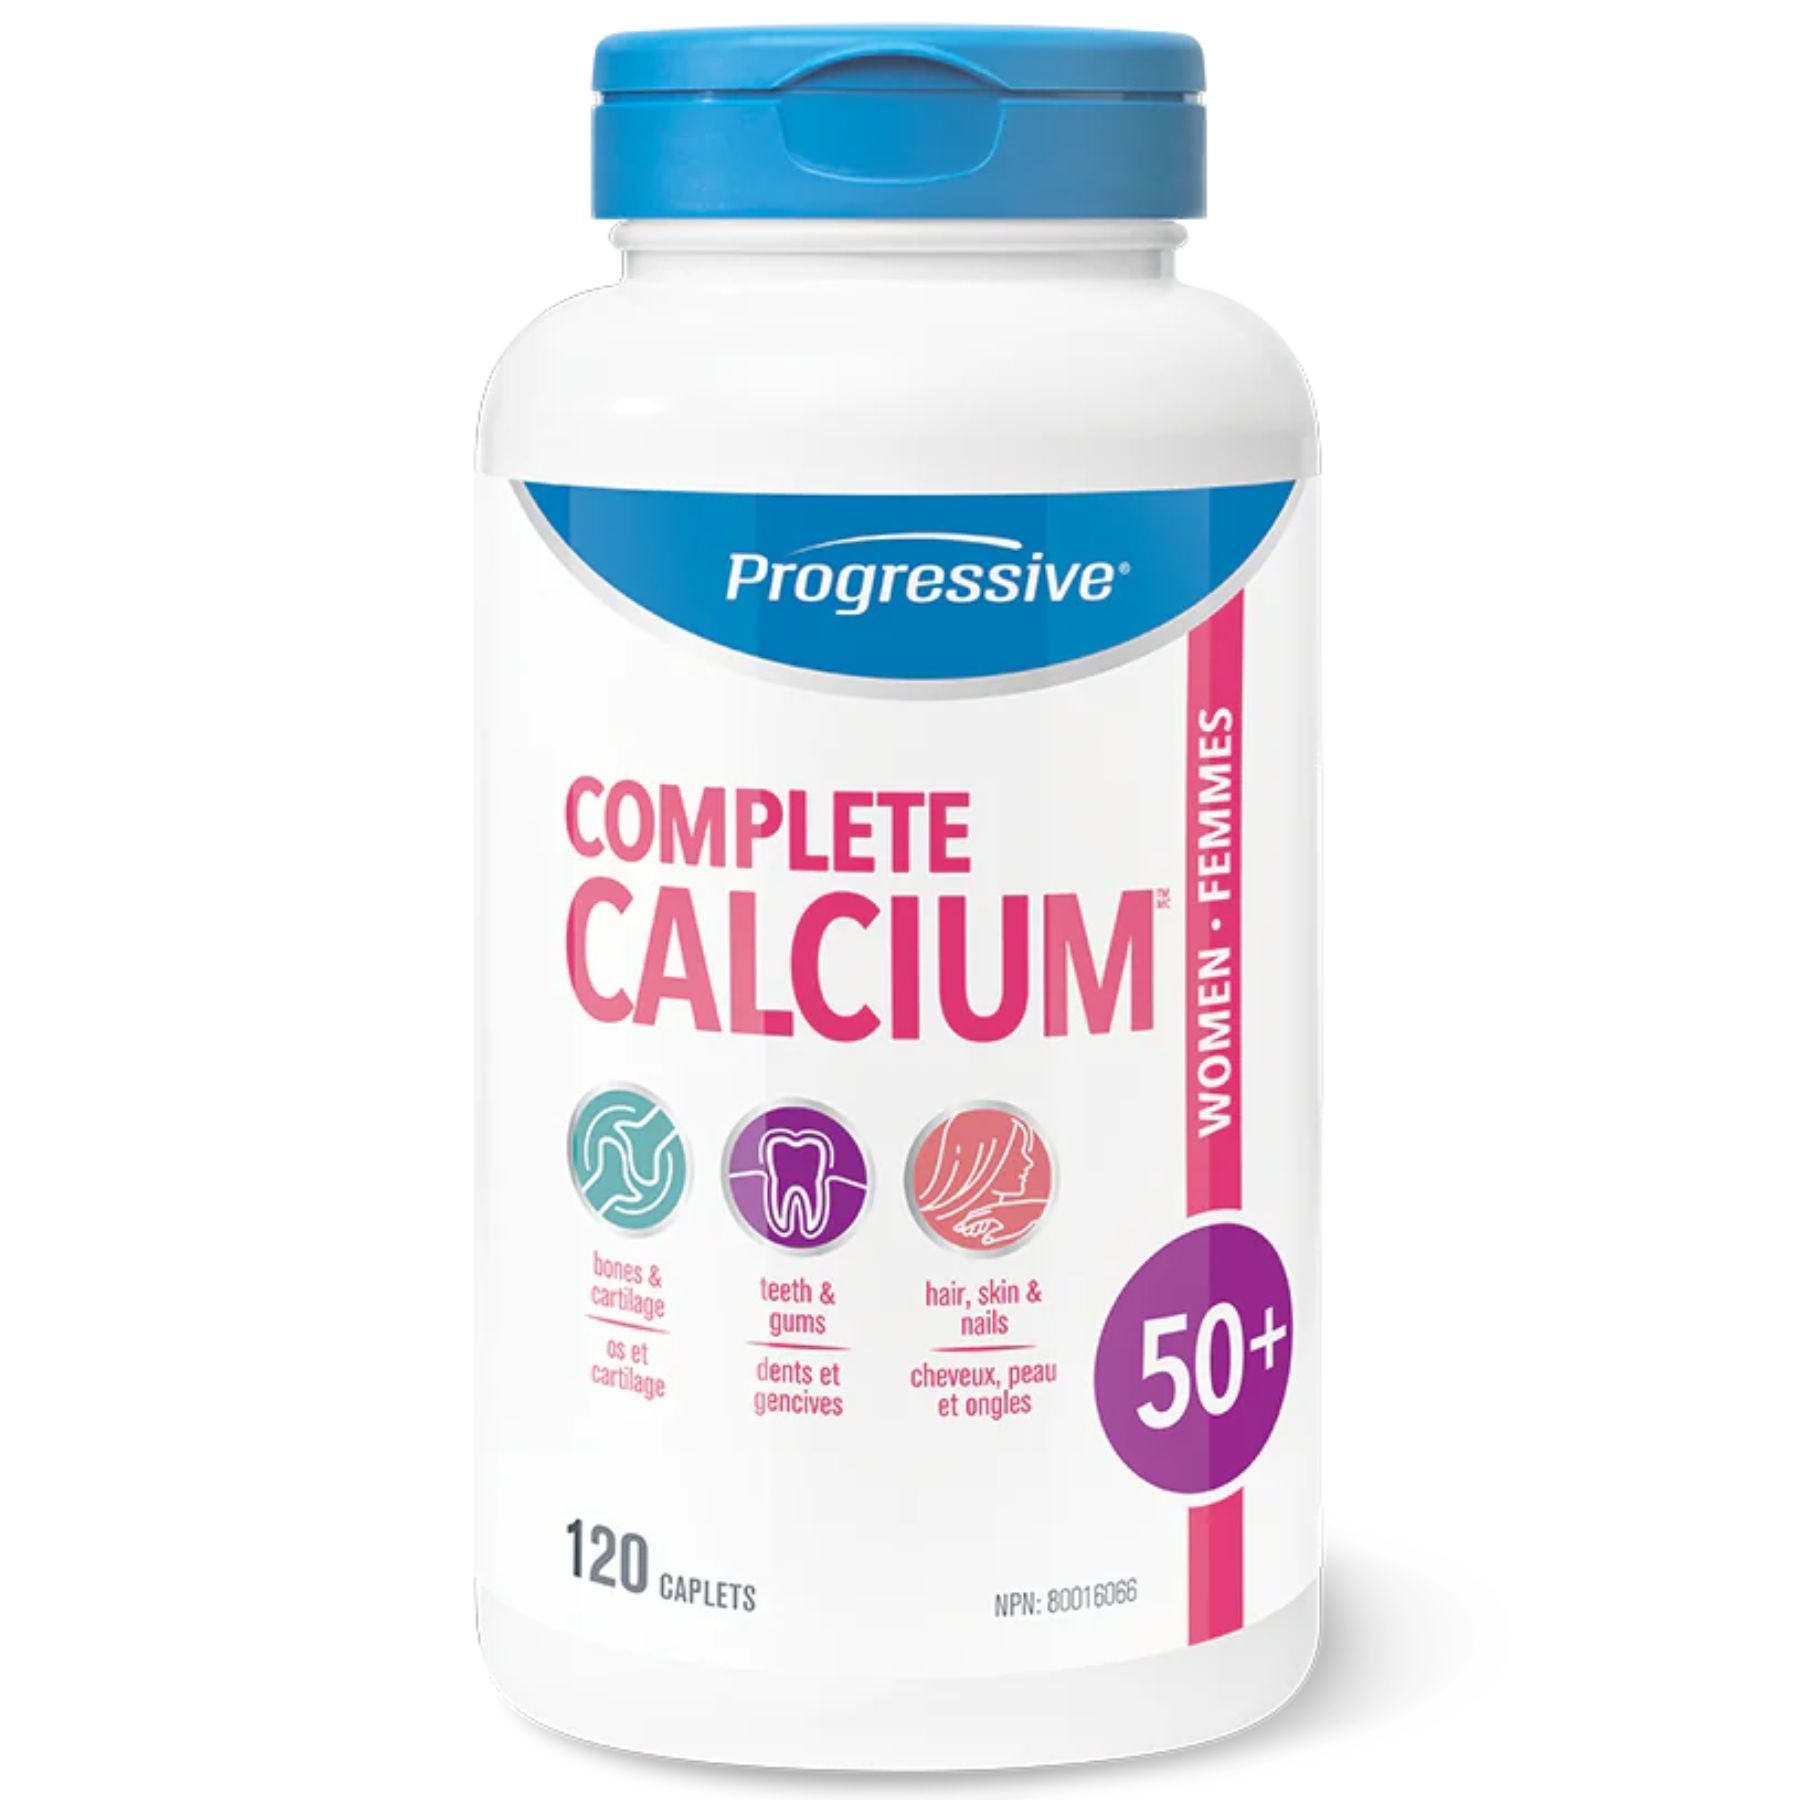 Progressive Complete Calcium for Adult Women 50+ 120s